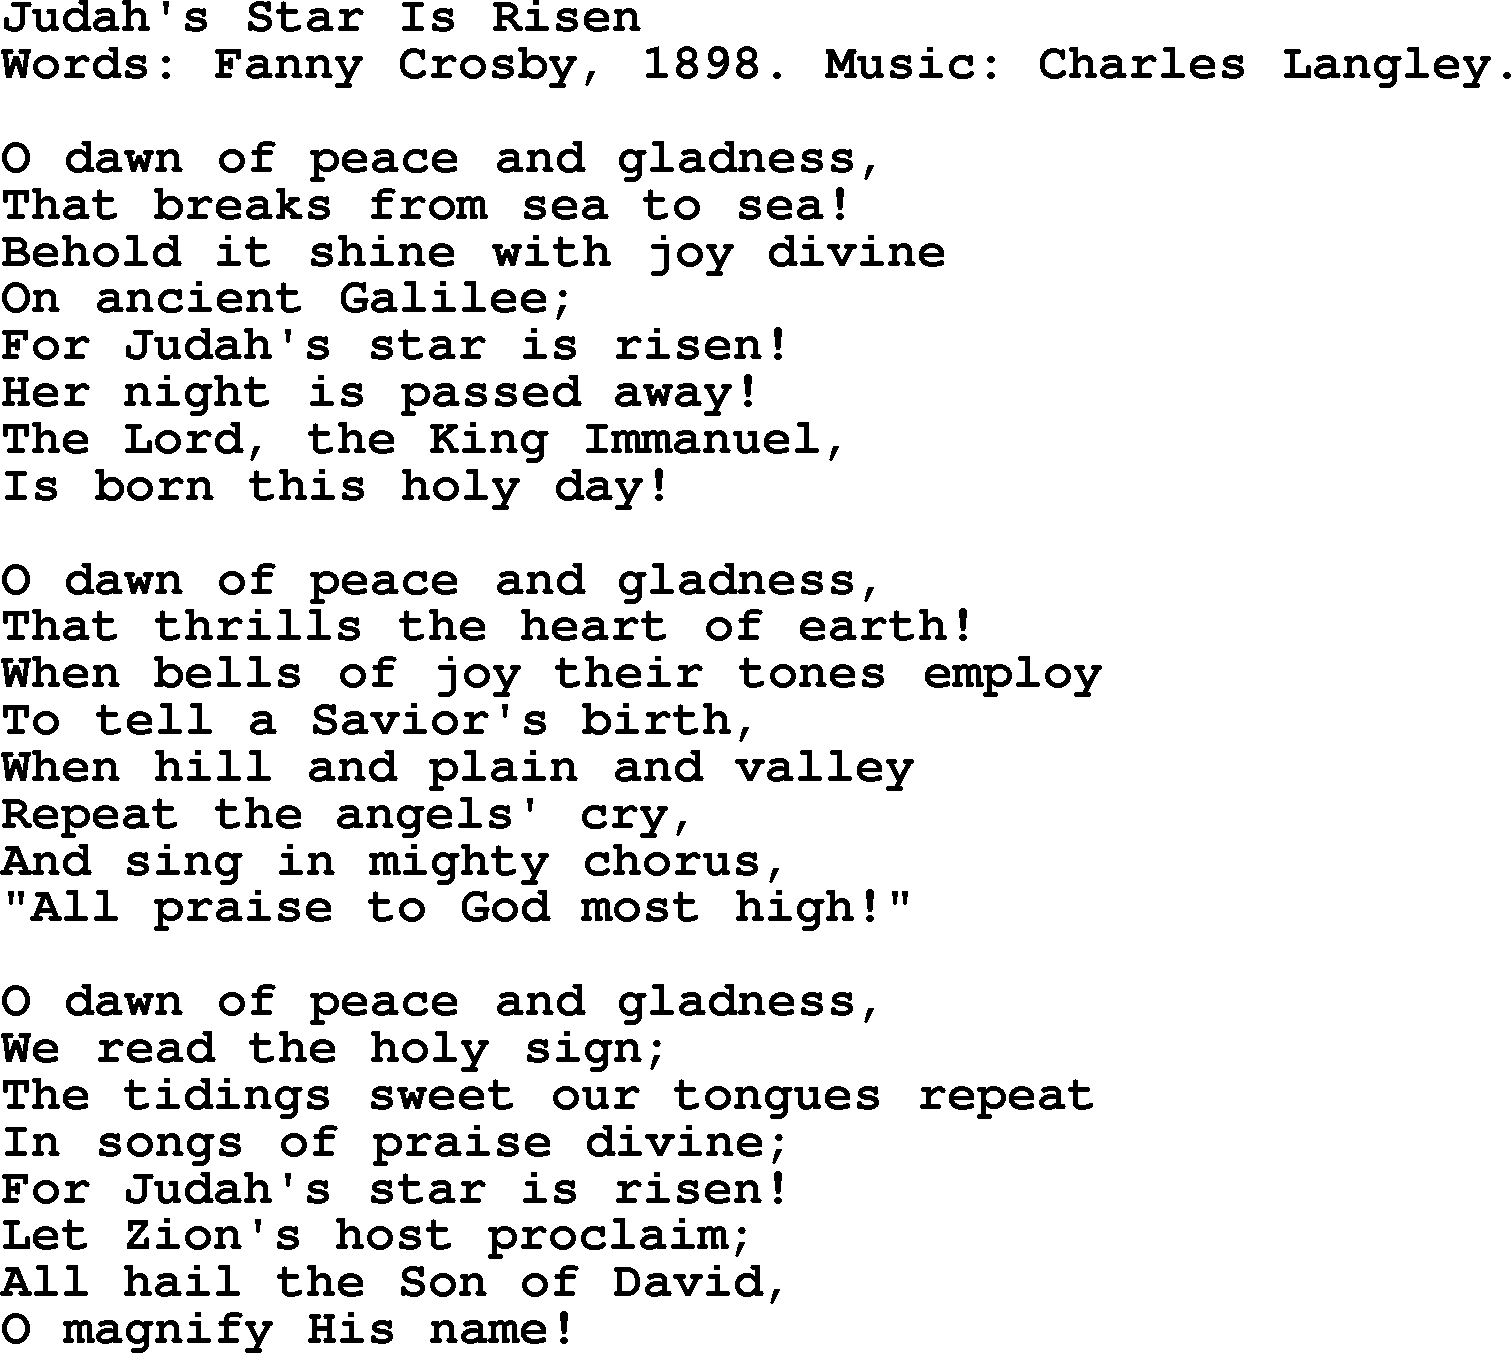 Fanny Crosby song: Judah's Star Is Risen, lyrics